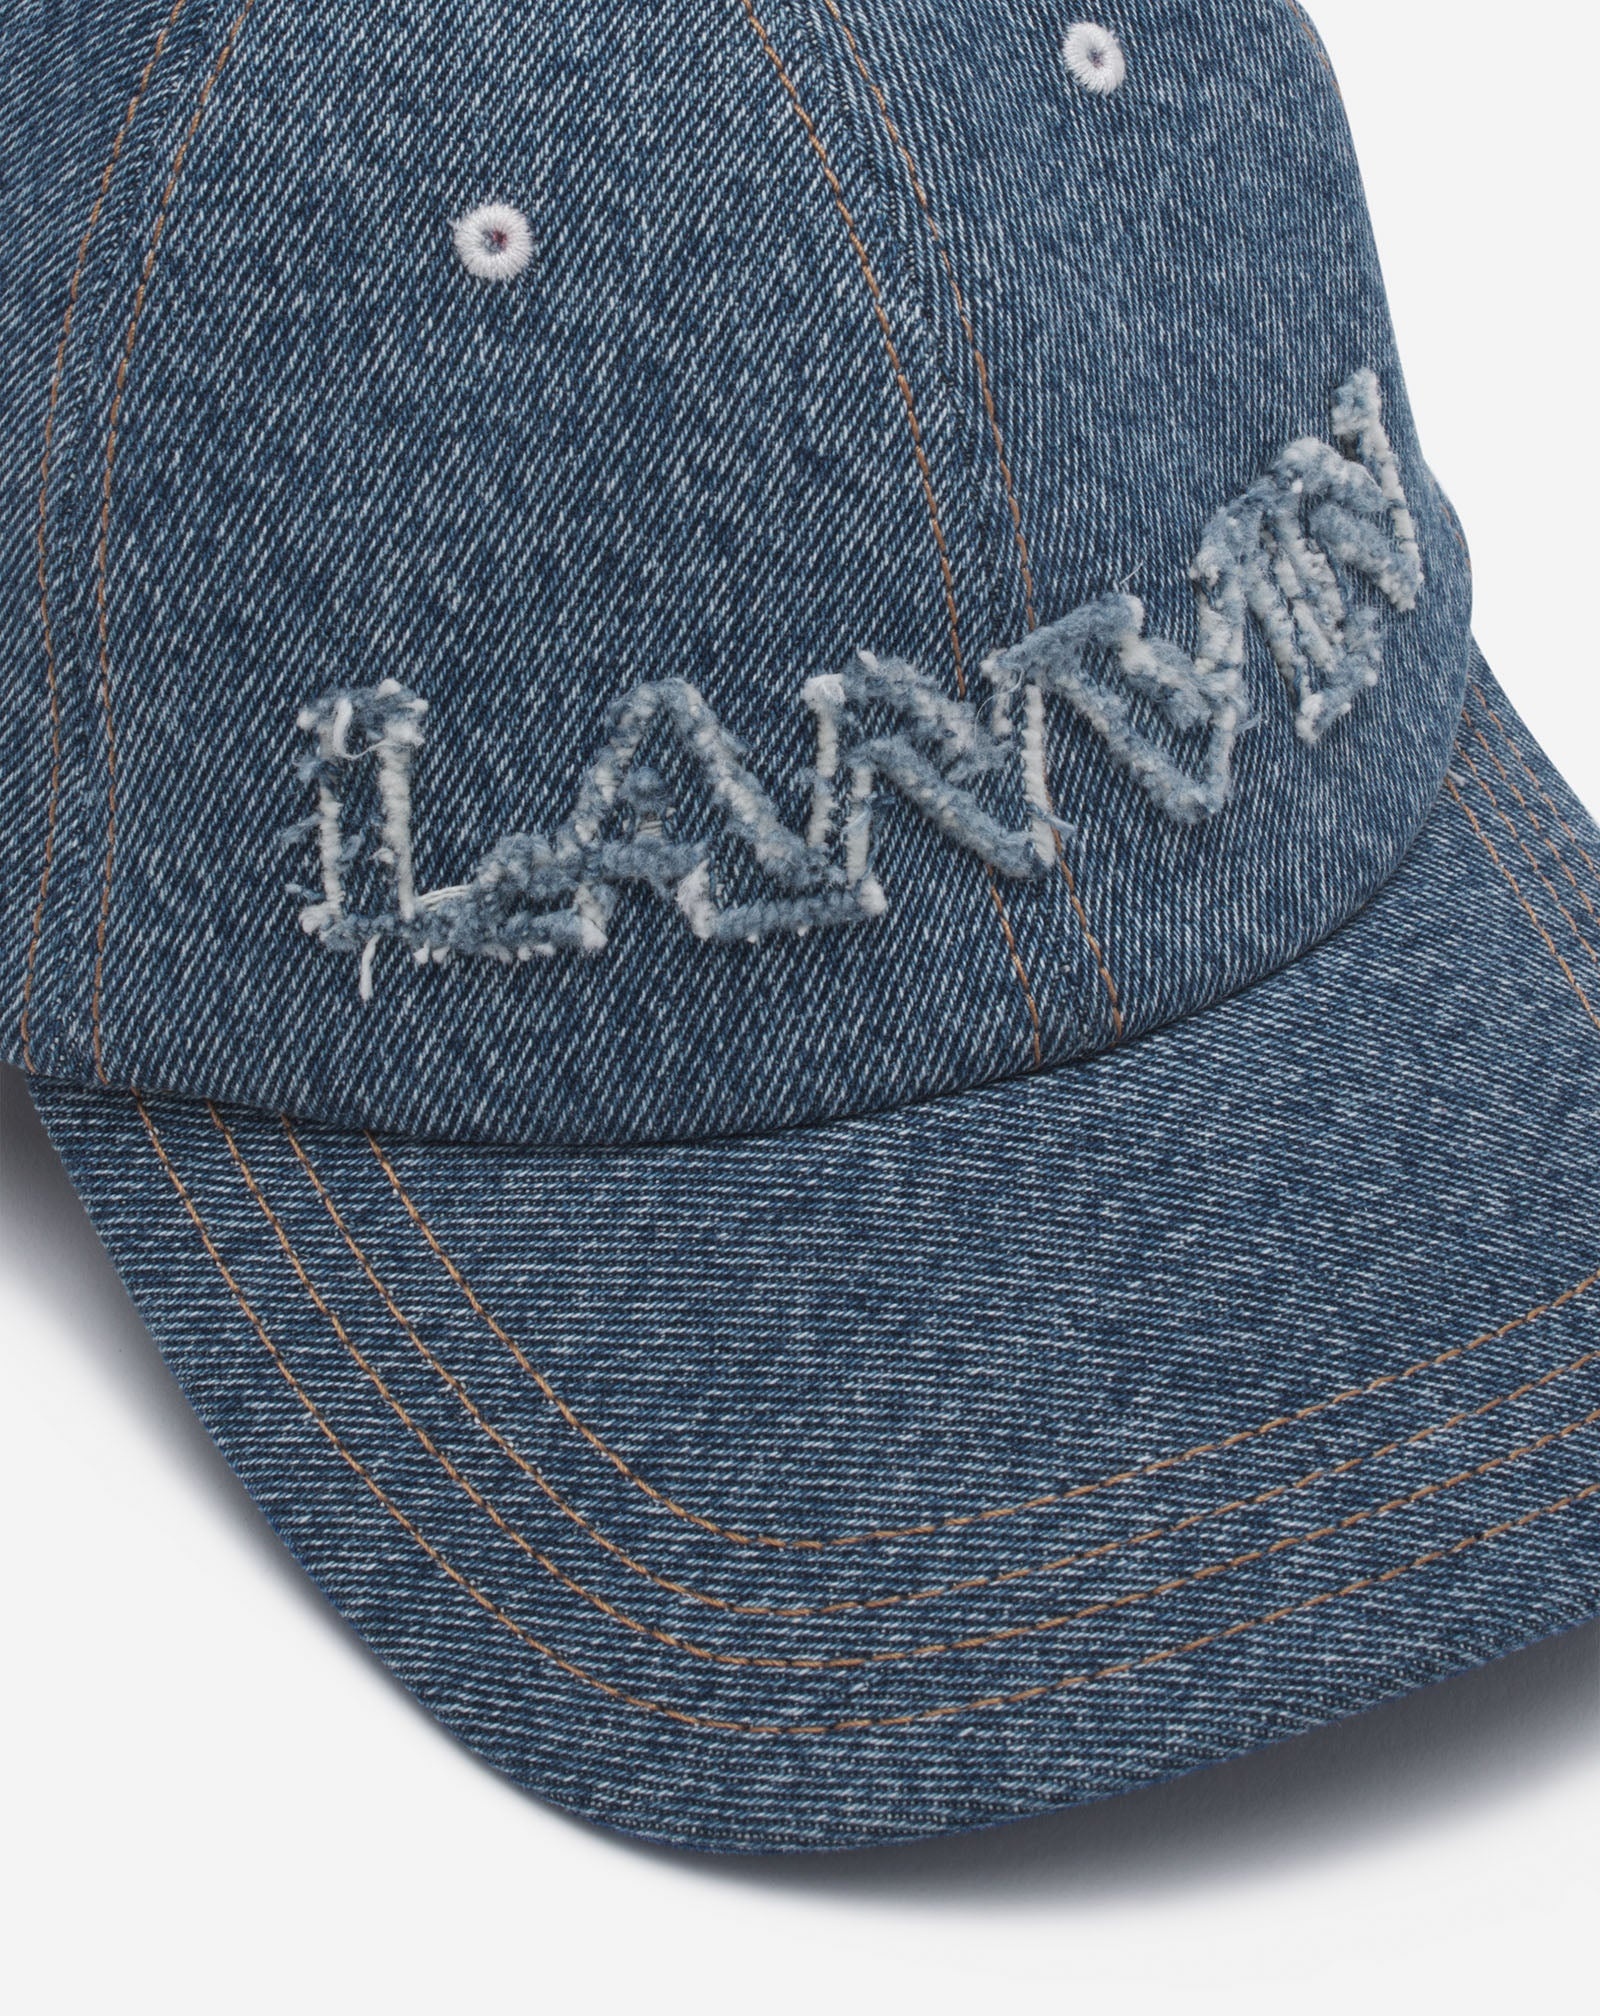 LANVIN CAP IN DENIM - 5